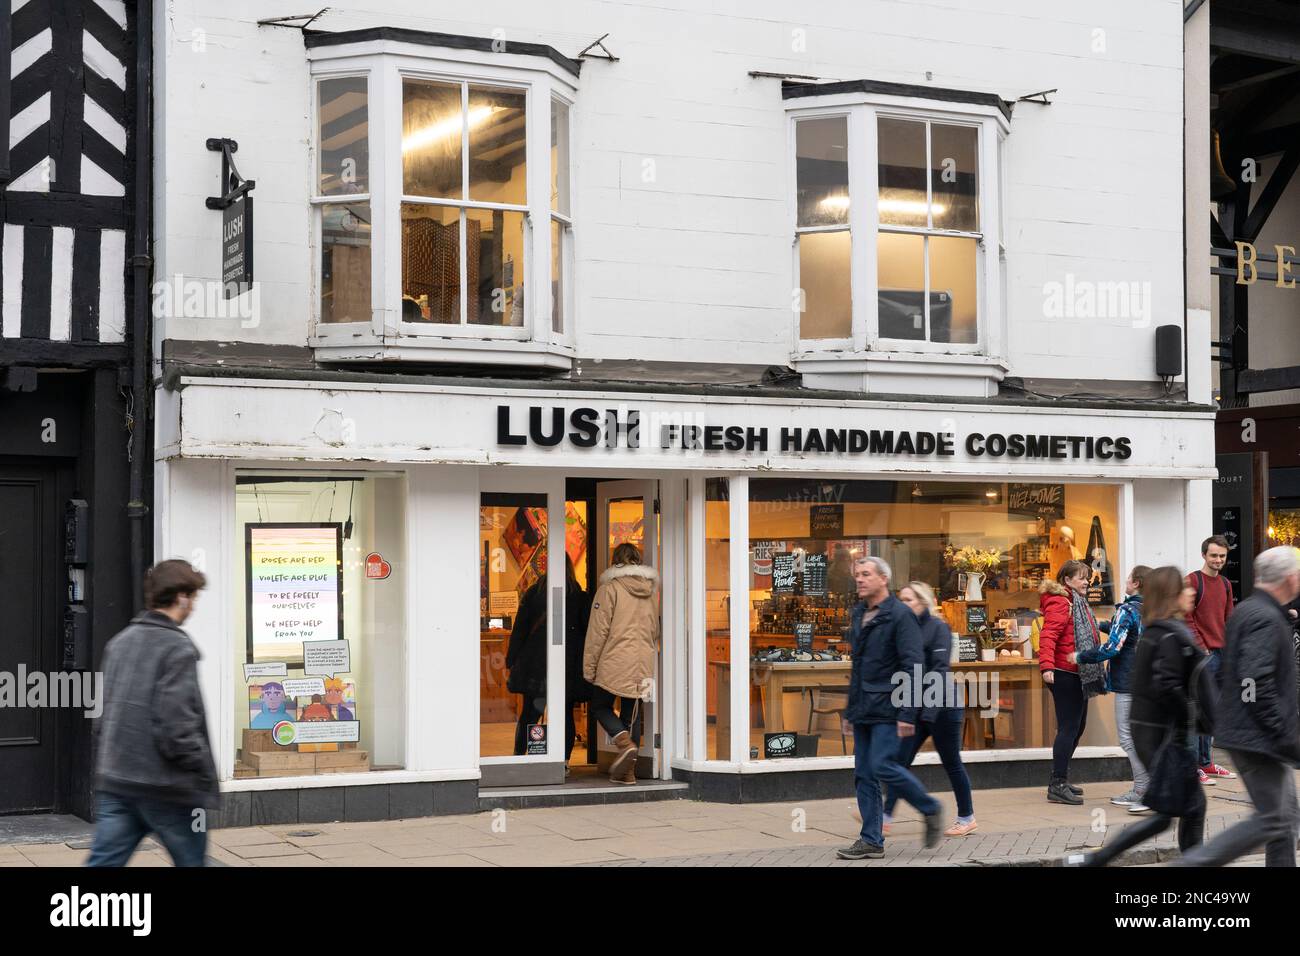 Leute, die an der Fassade eines üppigen Ladens in Stratford-upon-Avon, England, vorbeigehen. Lush Retail Ltd. Ist ein britischer Kosmetikhändler Stockfoto